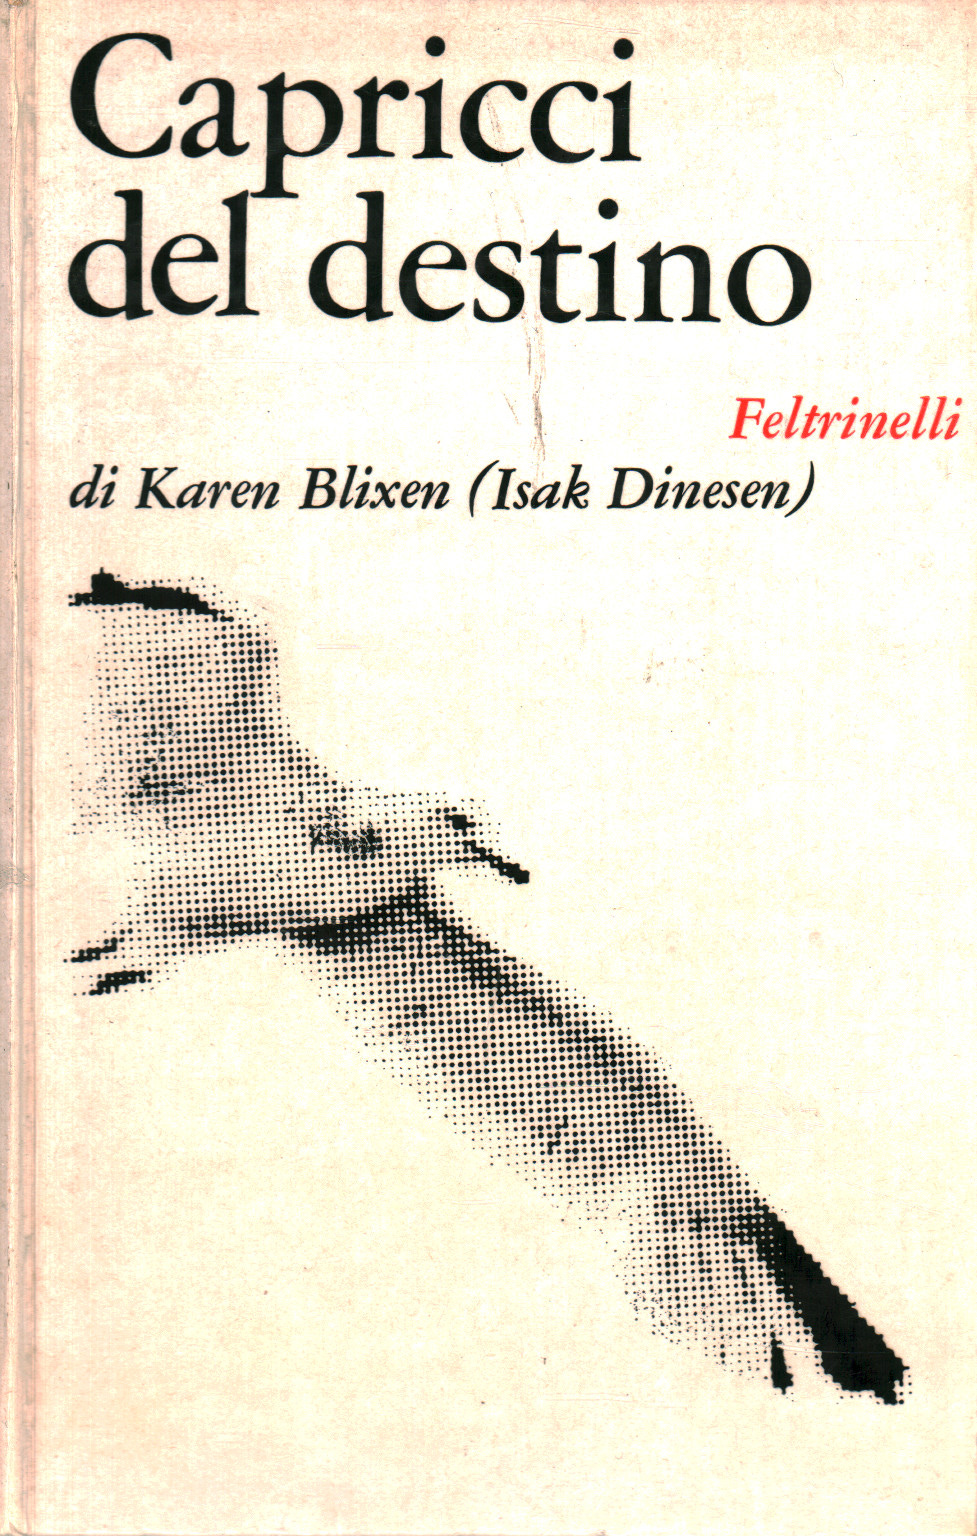 Karen Blixen, usato, Capricci del destino, racconti, Libreria, Narrativa,  dimanoinmano.it